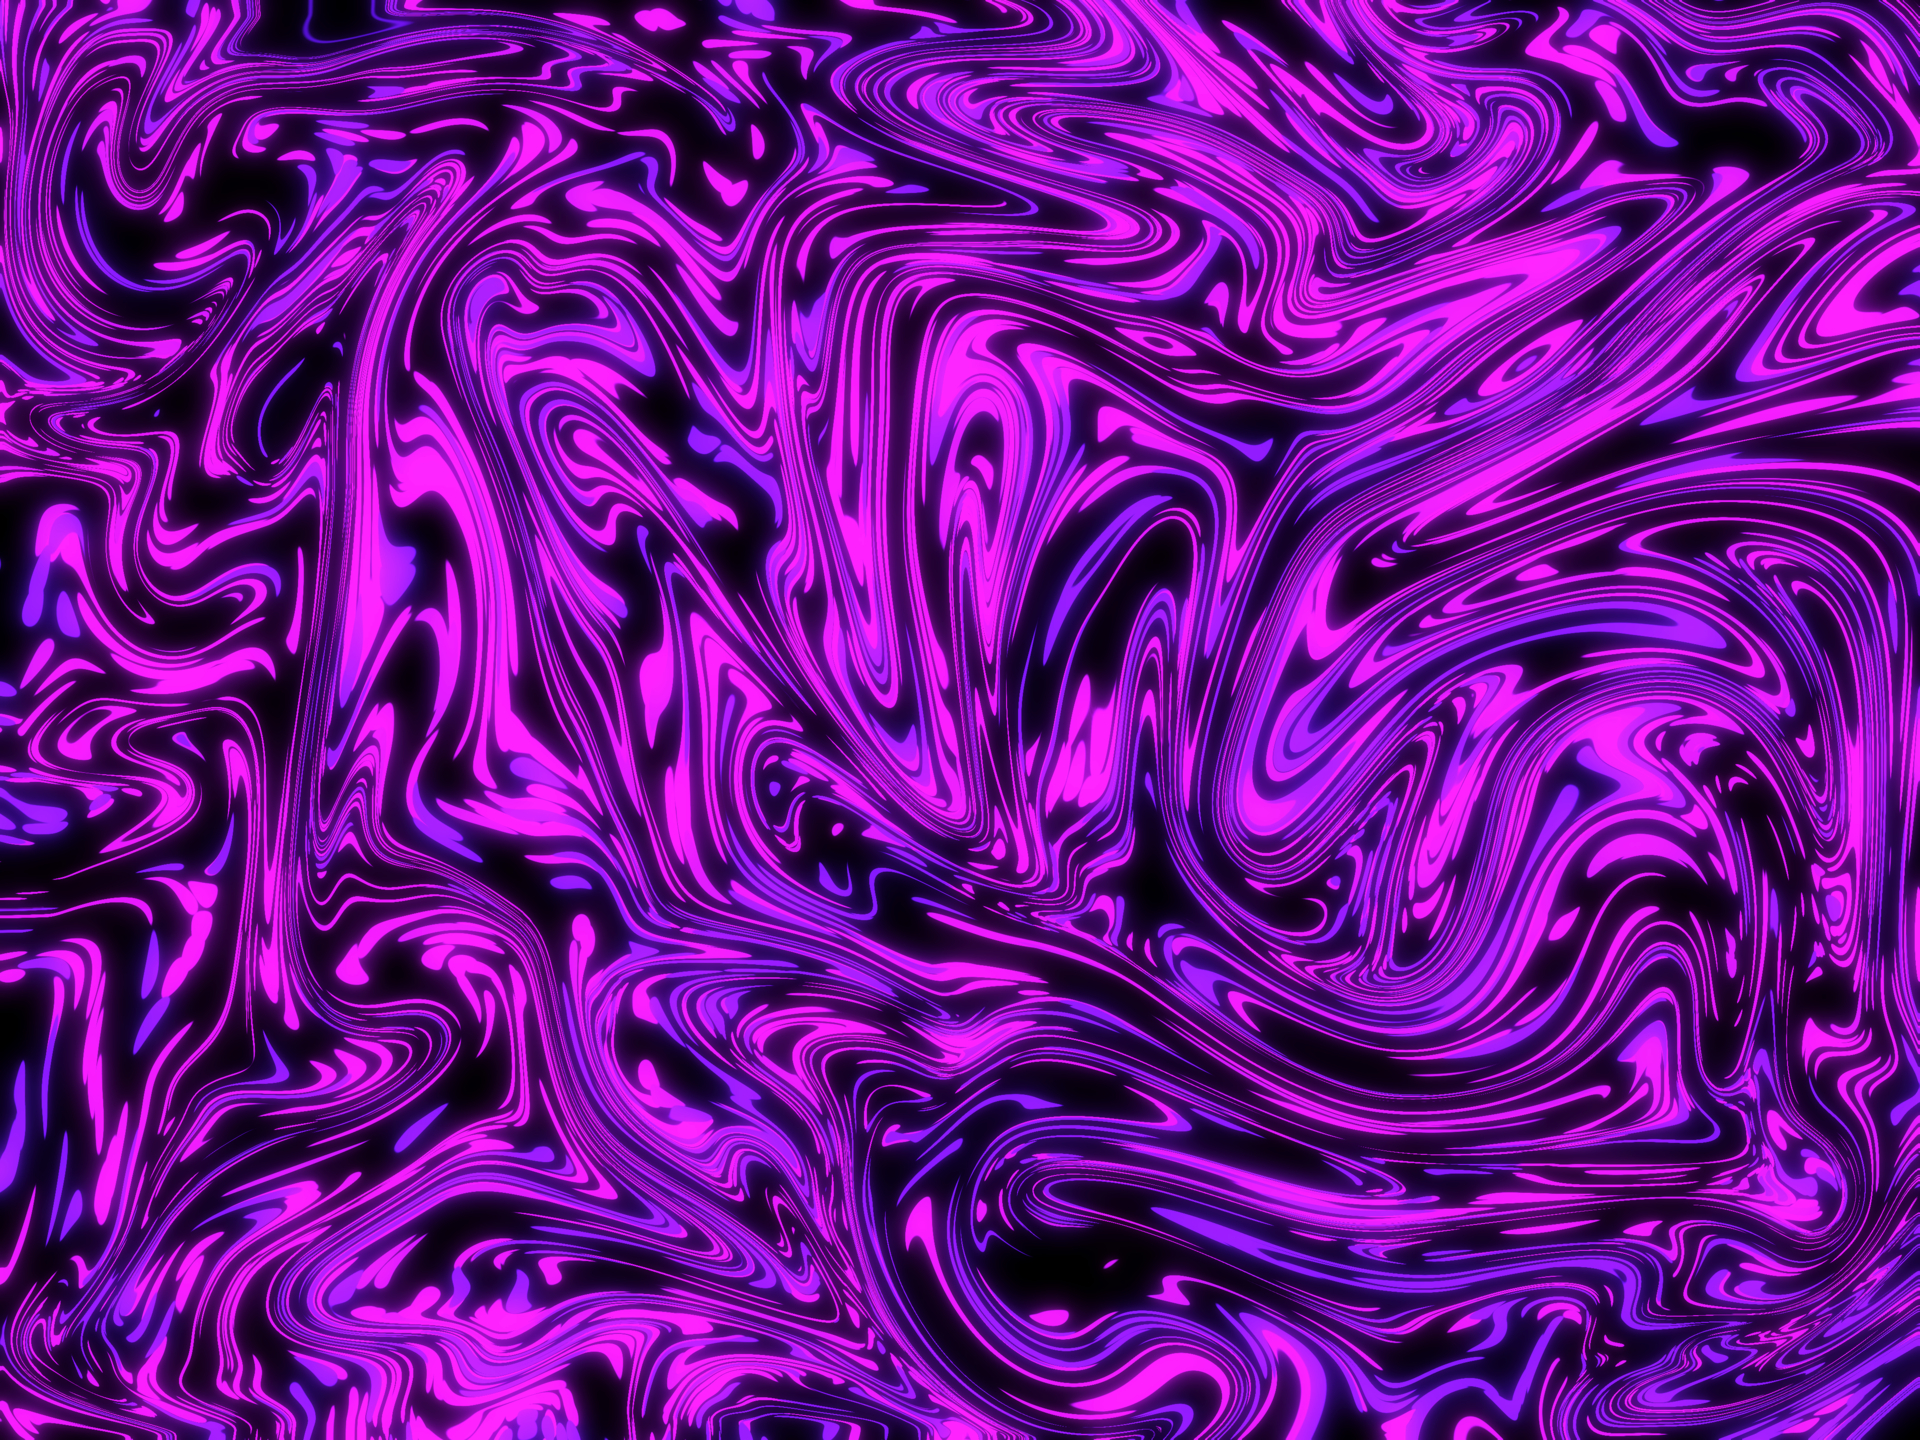 Purple_Fluid_Two_Colors, width 1920, jpg